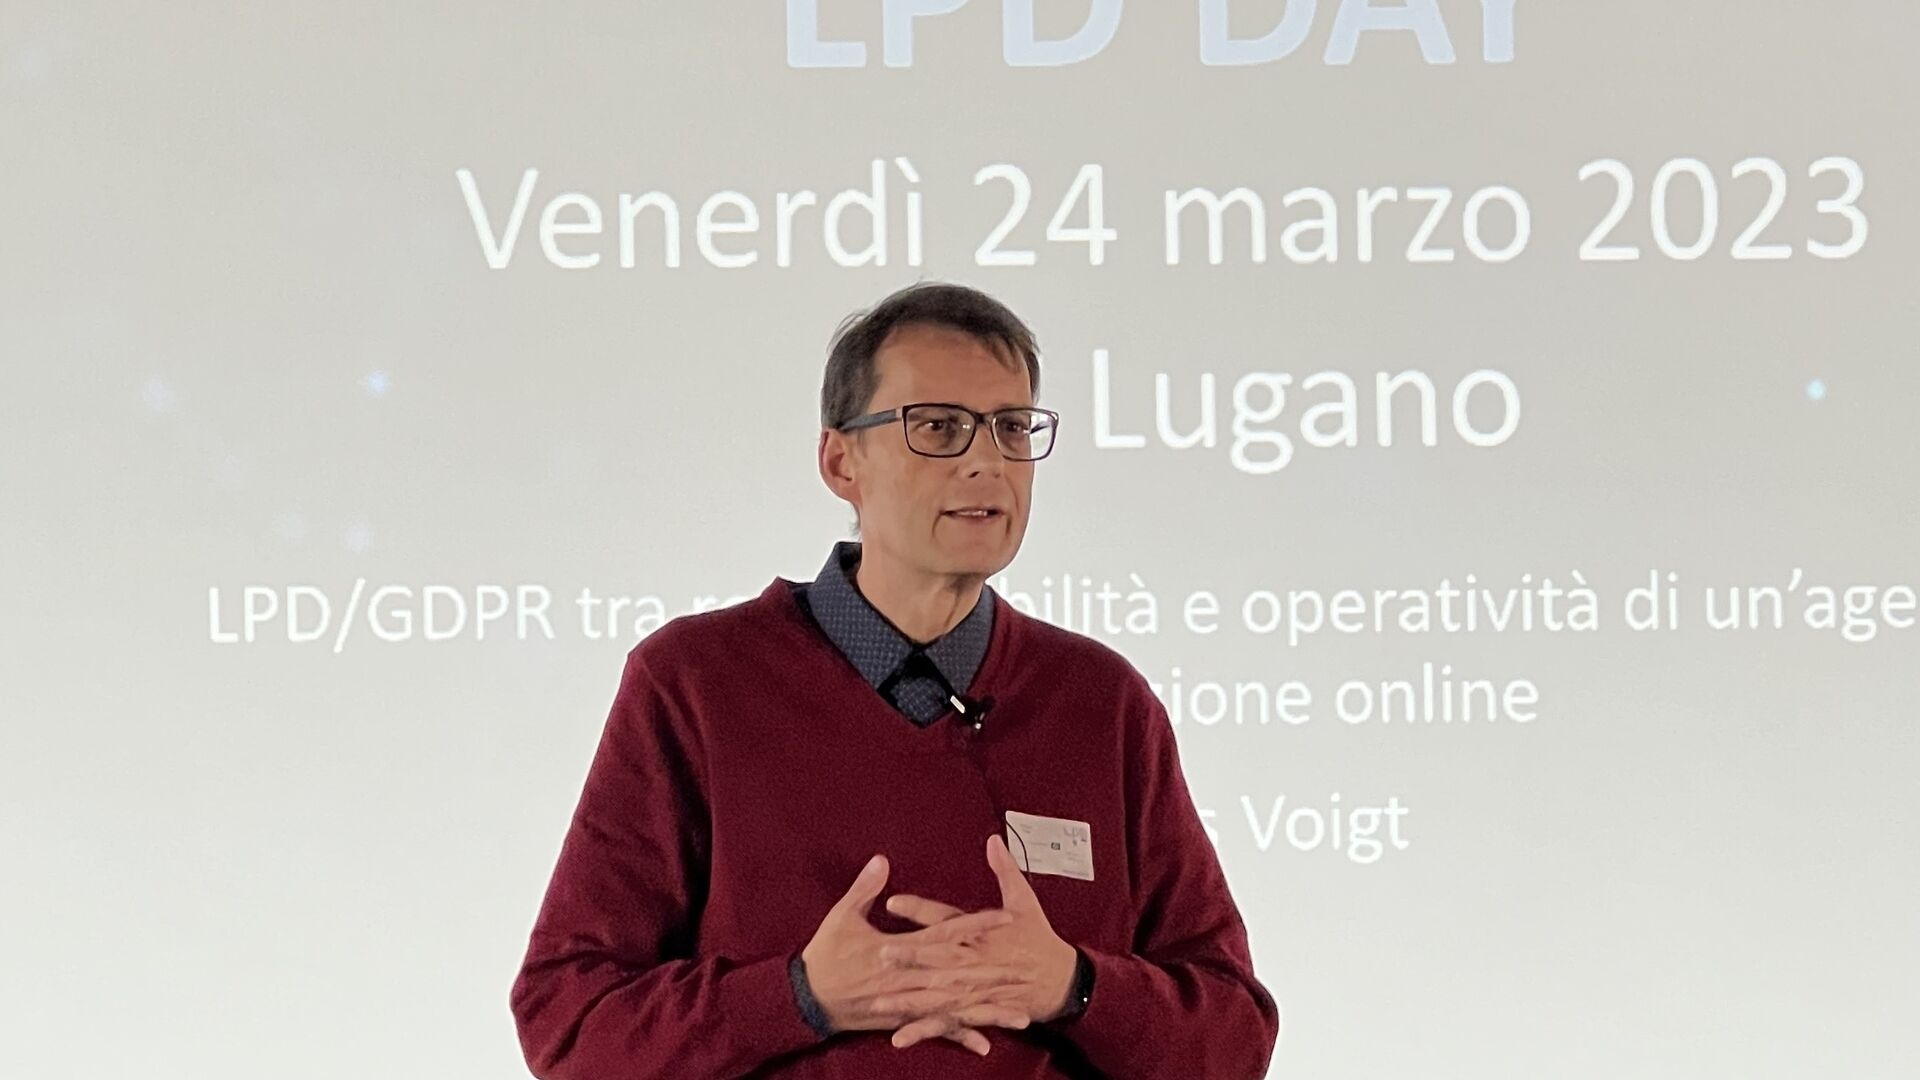 Dati personali: Andreas Arno Michael Voigt, CEO di Innovando GmbH, è stato uno dei relatori all’edizione 2023 dello “LPD Day” di Lugano il 24 marzo 2023